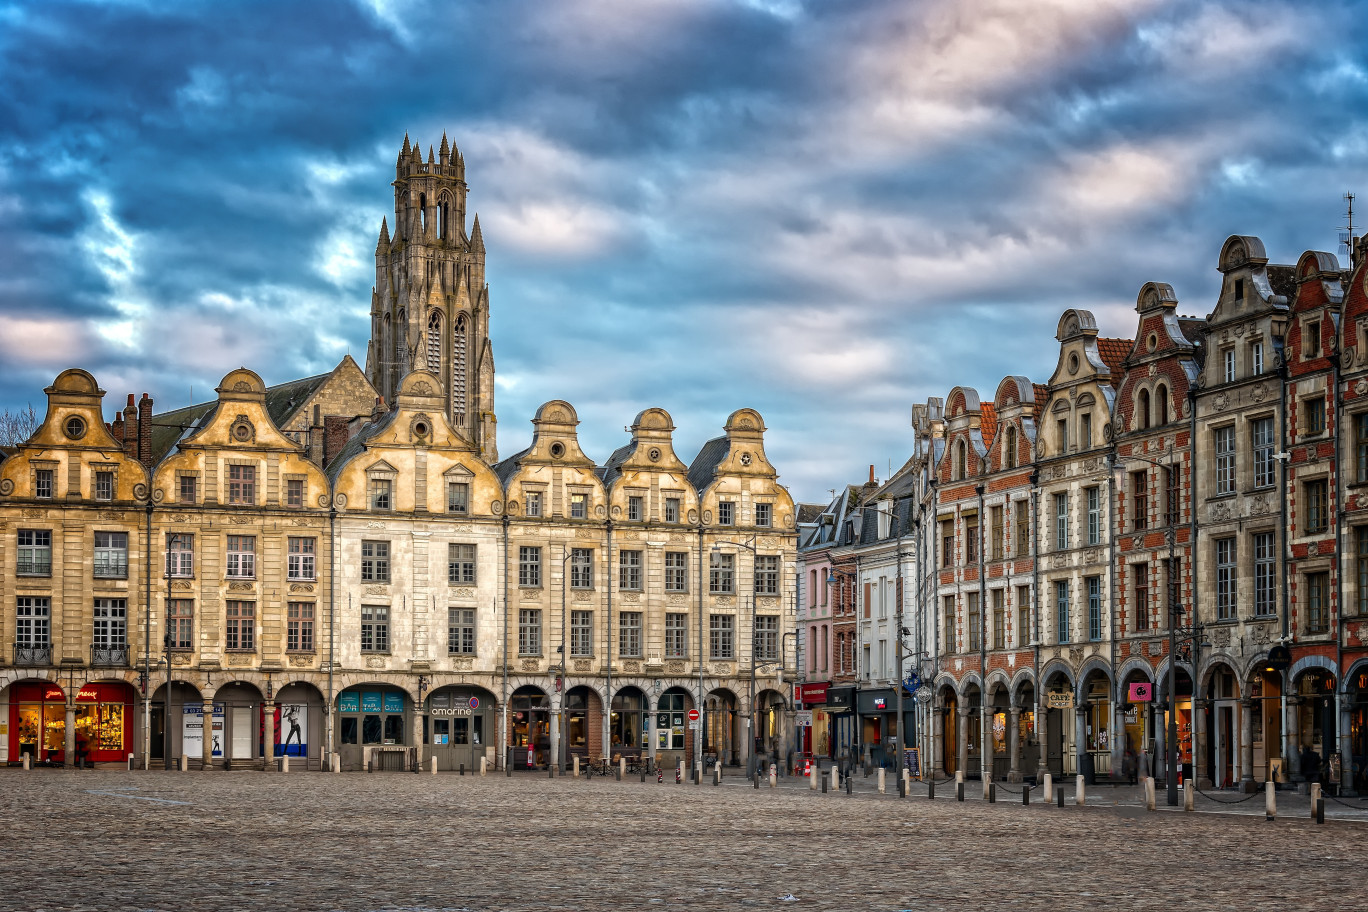 Lorsqu’un entrepreneur envisage de s’installer, la communauté urbaine d’Arras lui fait découvrir les attraits du territoire. © Pixabay